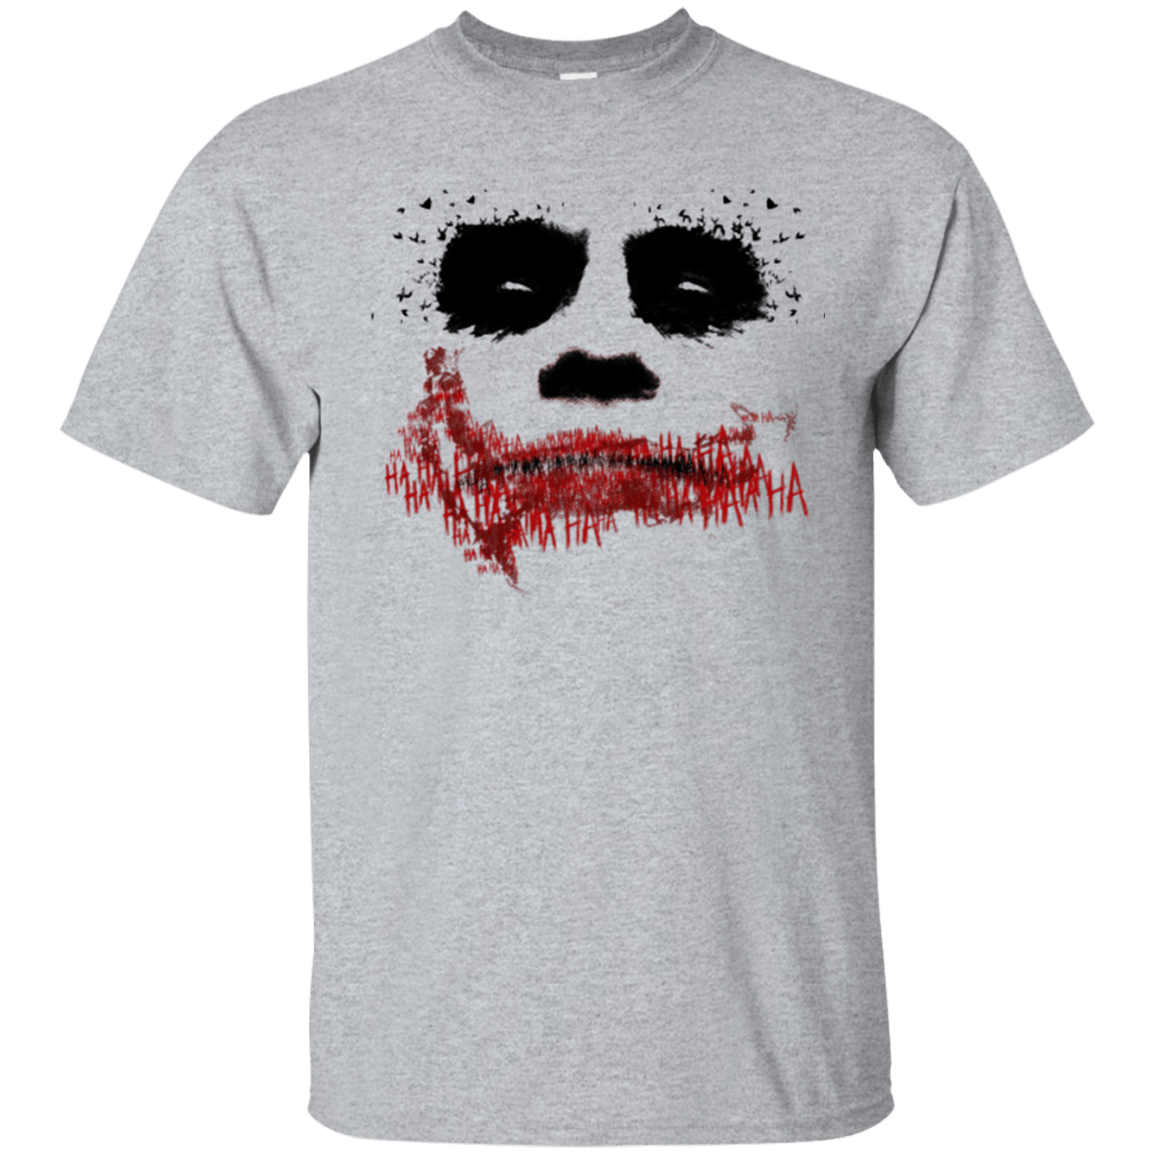 T-Shirts Sport Grey / Small Joker T-Shirt